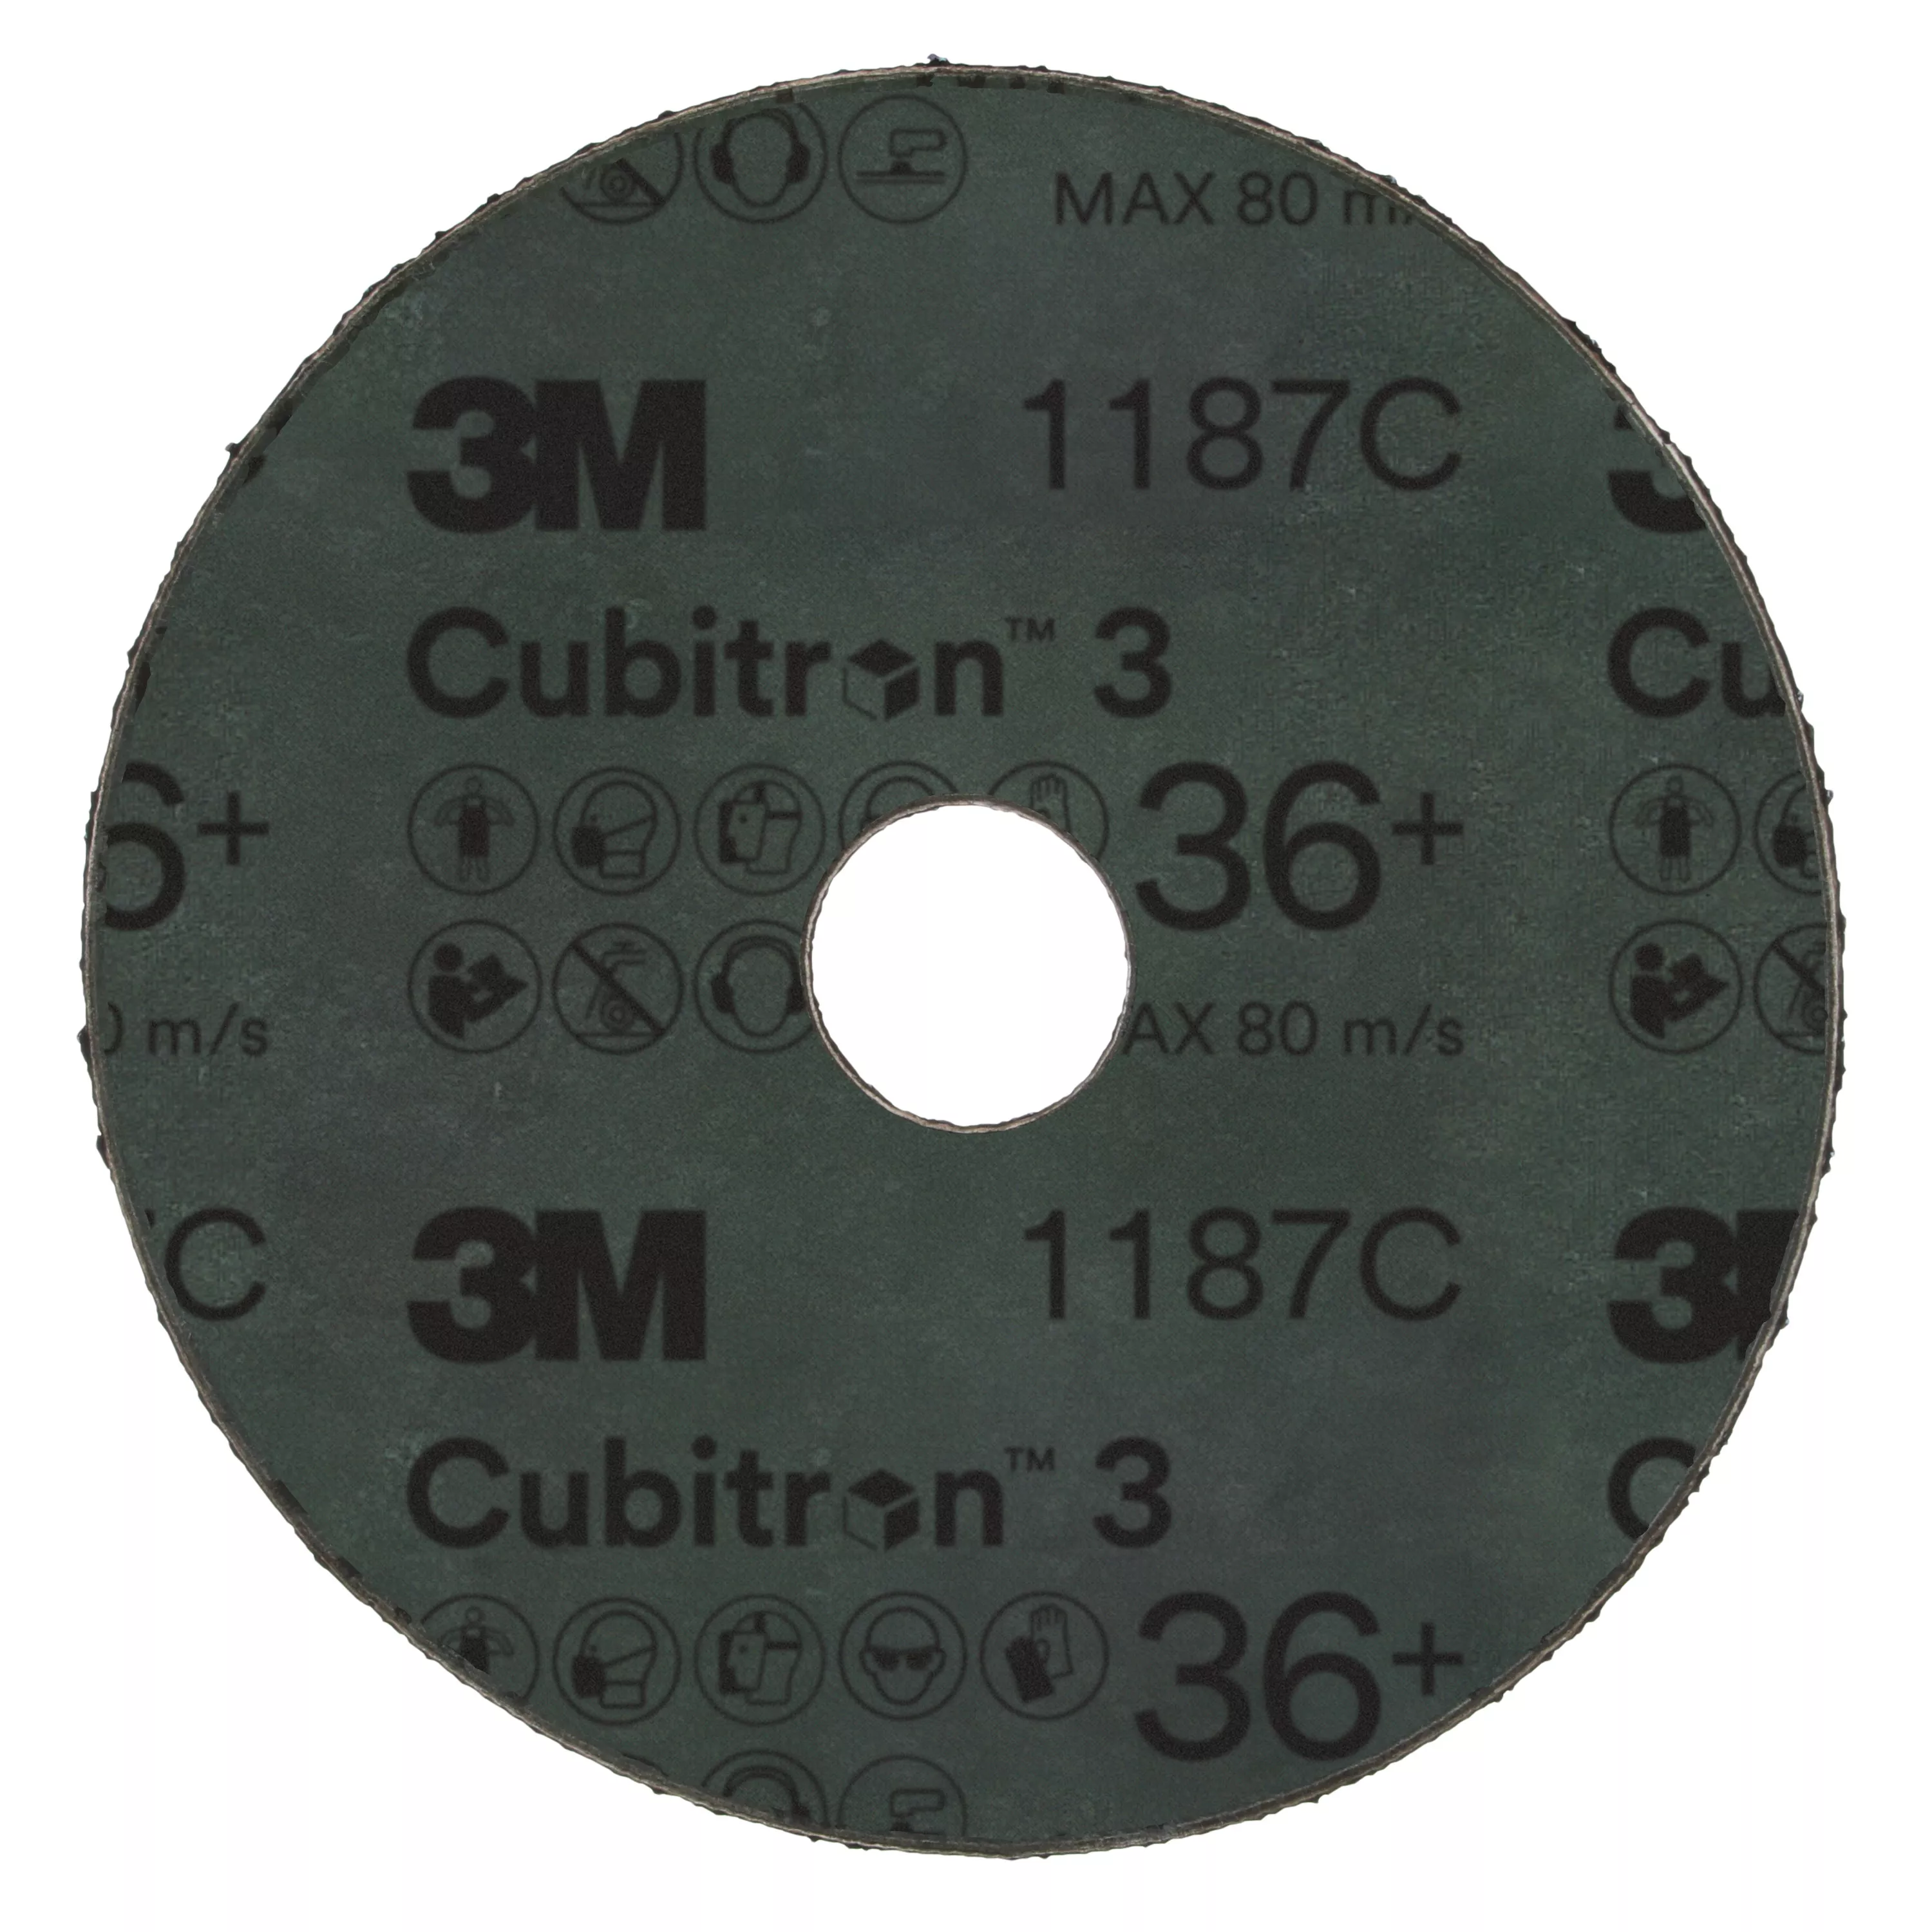 SKU 7100309788 | 3M™ Cubitron™ 3 Fibre Disc 1187C